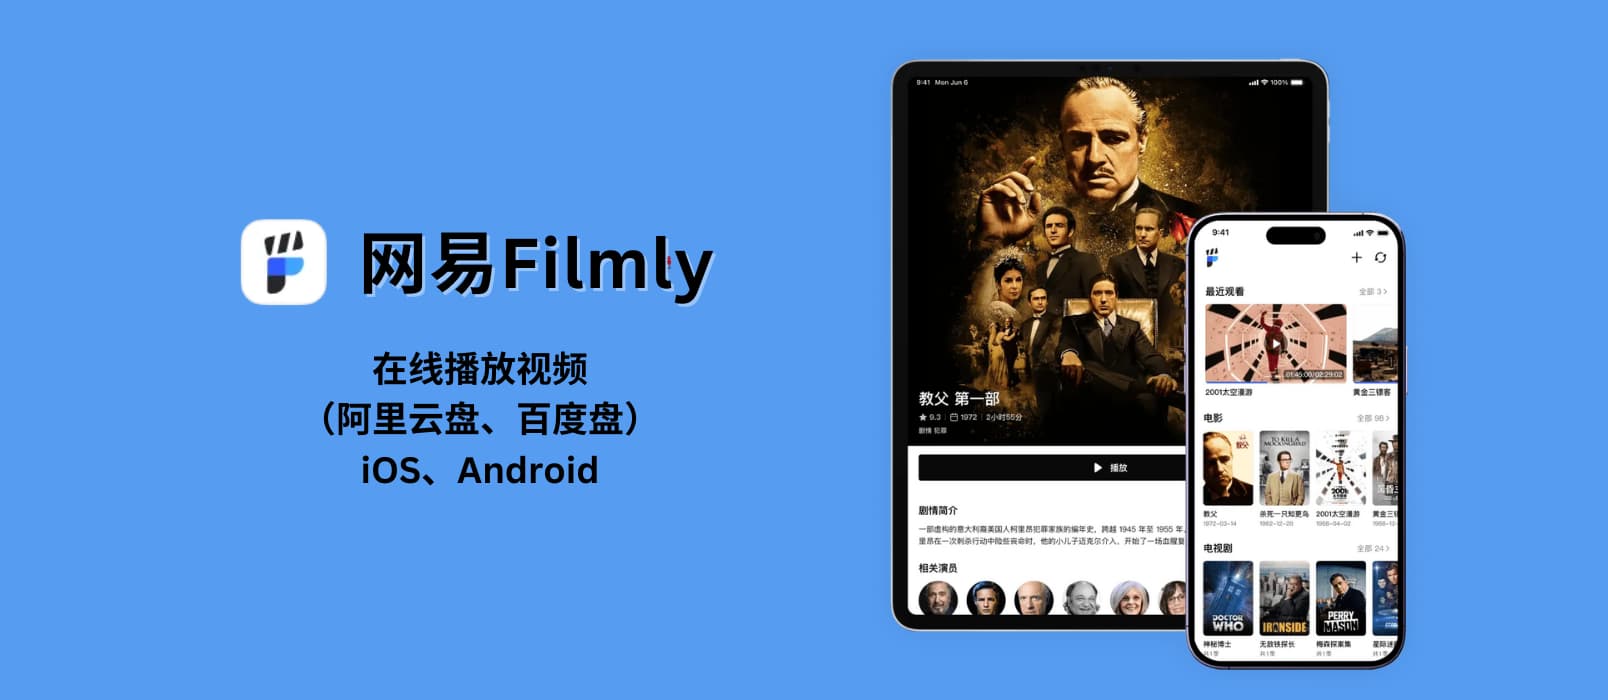 网易Filmly - 网易发布 iOS、Android 个人媒体库，可在线播放视频（阿里云盘、百度盘），支持刮削、海报墙